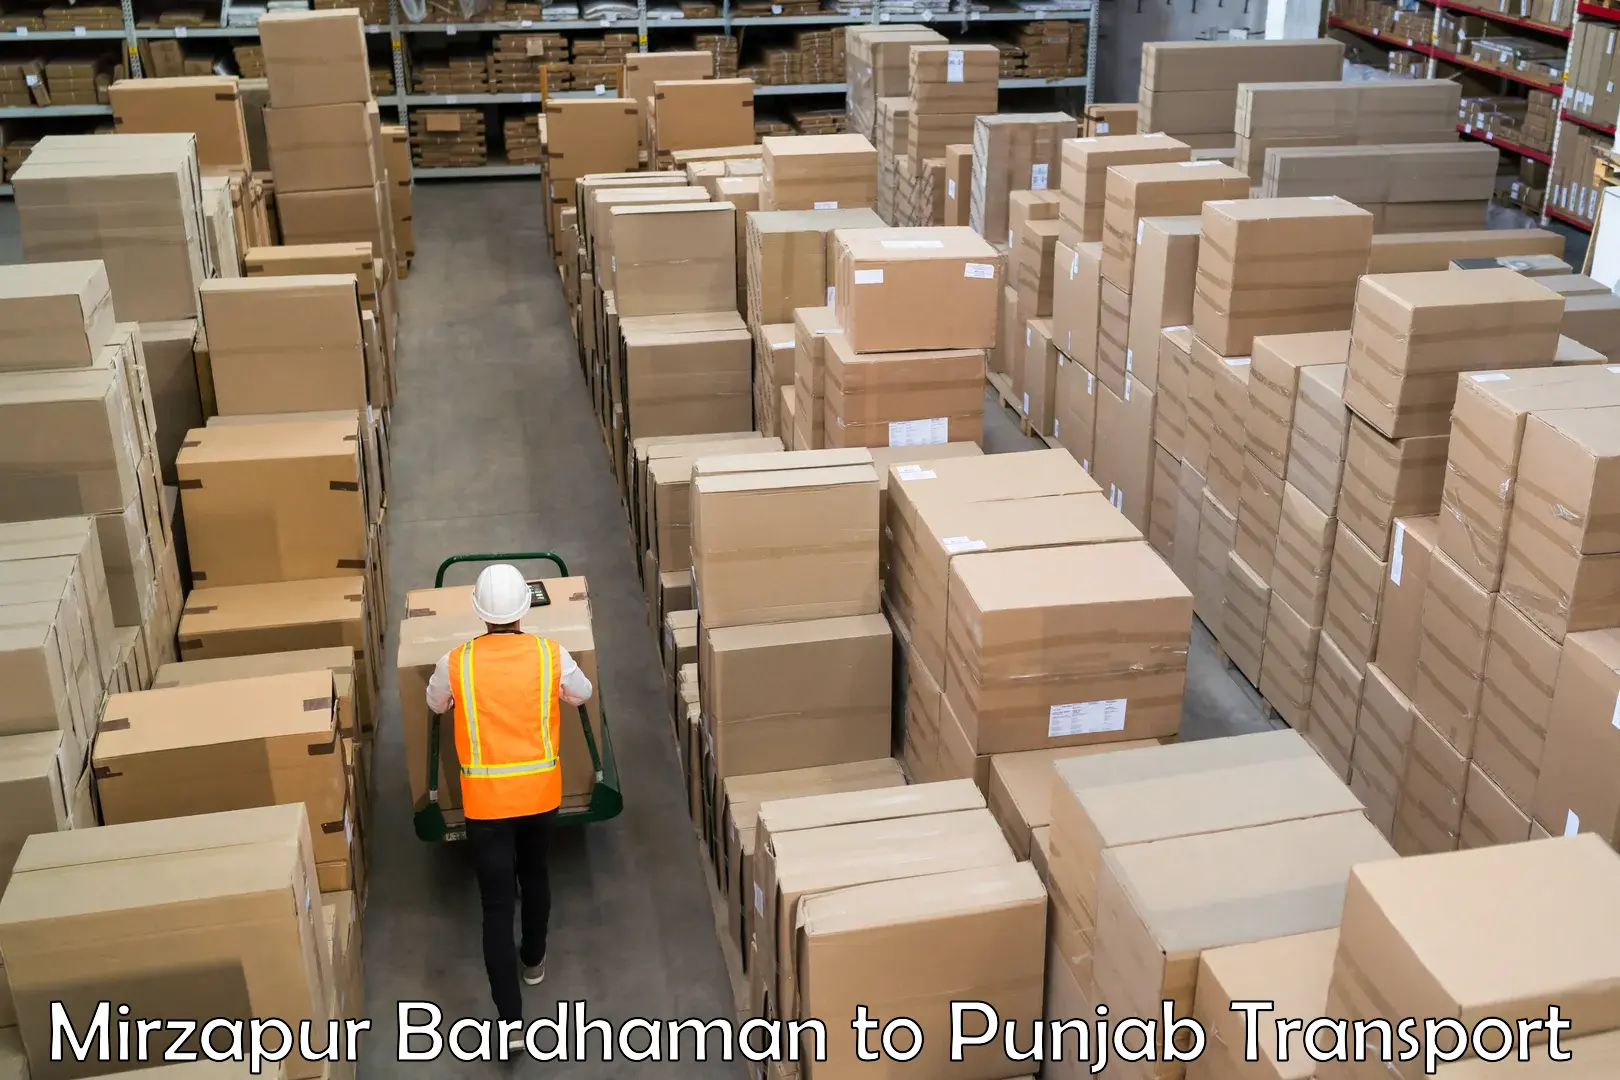 Shipping partner Mirzapur Bardhaman to Punjab